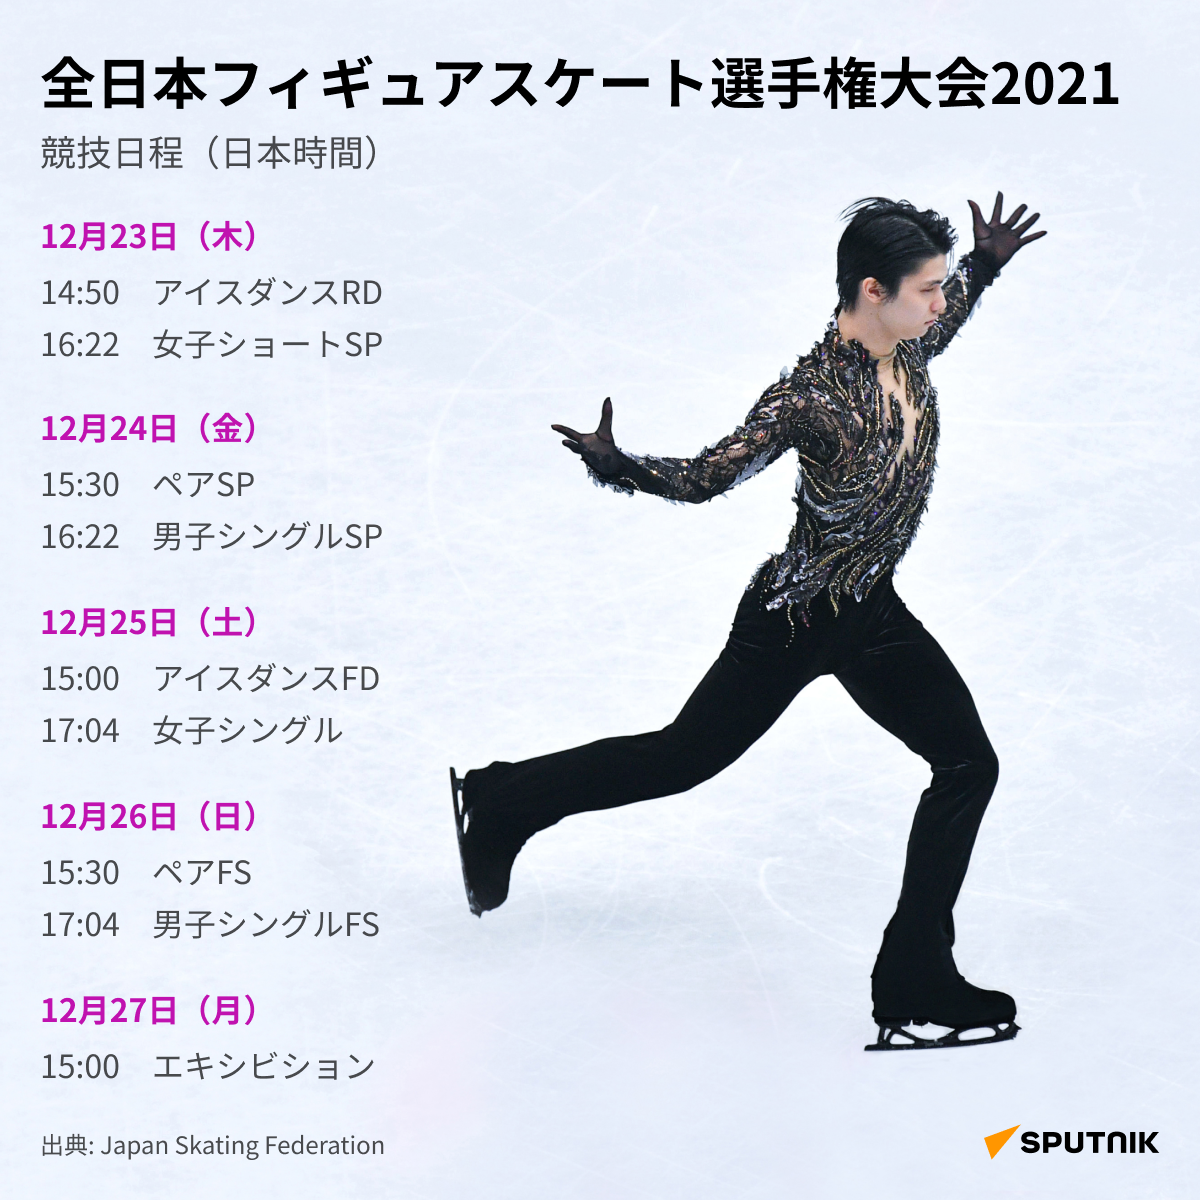 全日本フィギュアスケート選手権大会(DESK) - Sputnik 日本